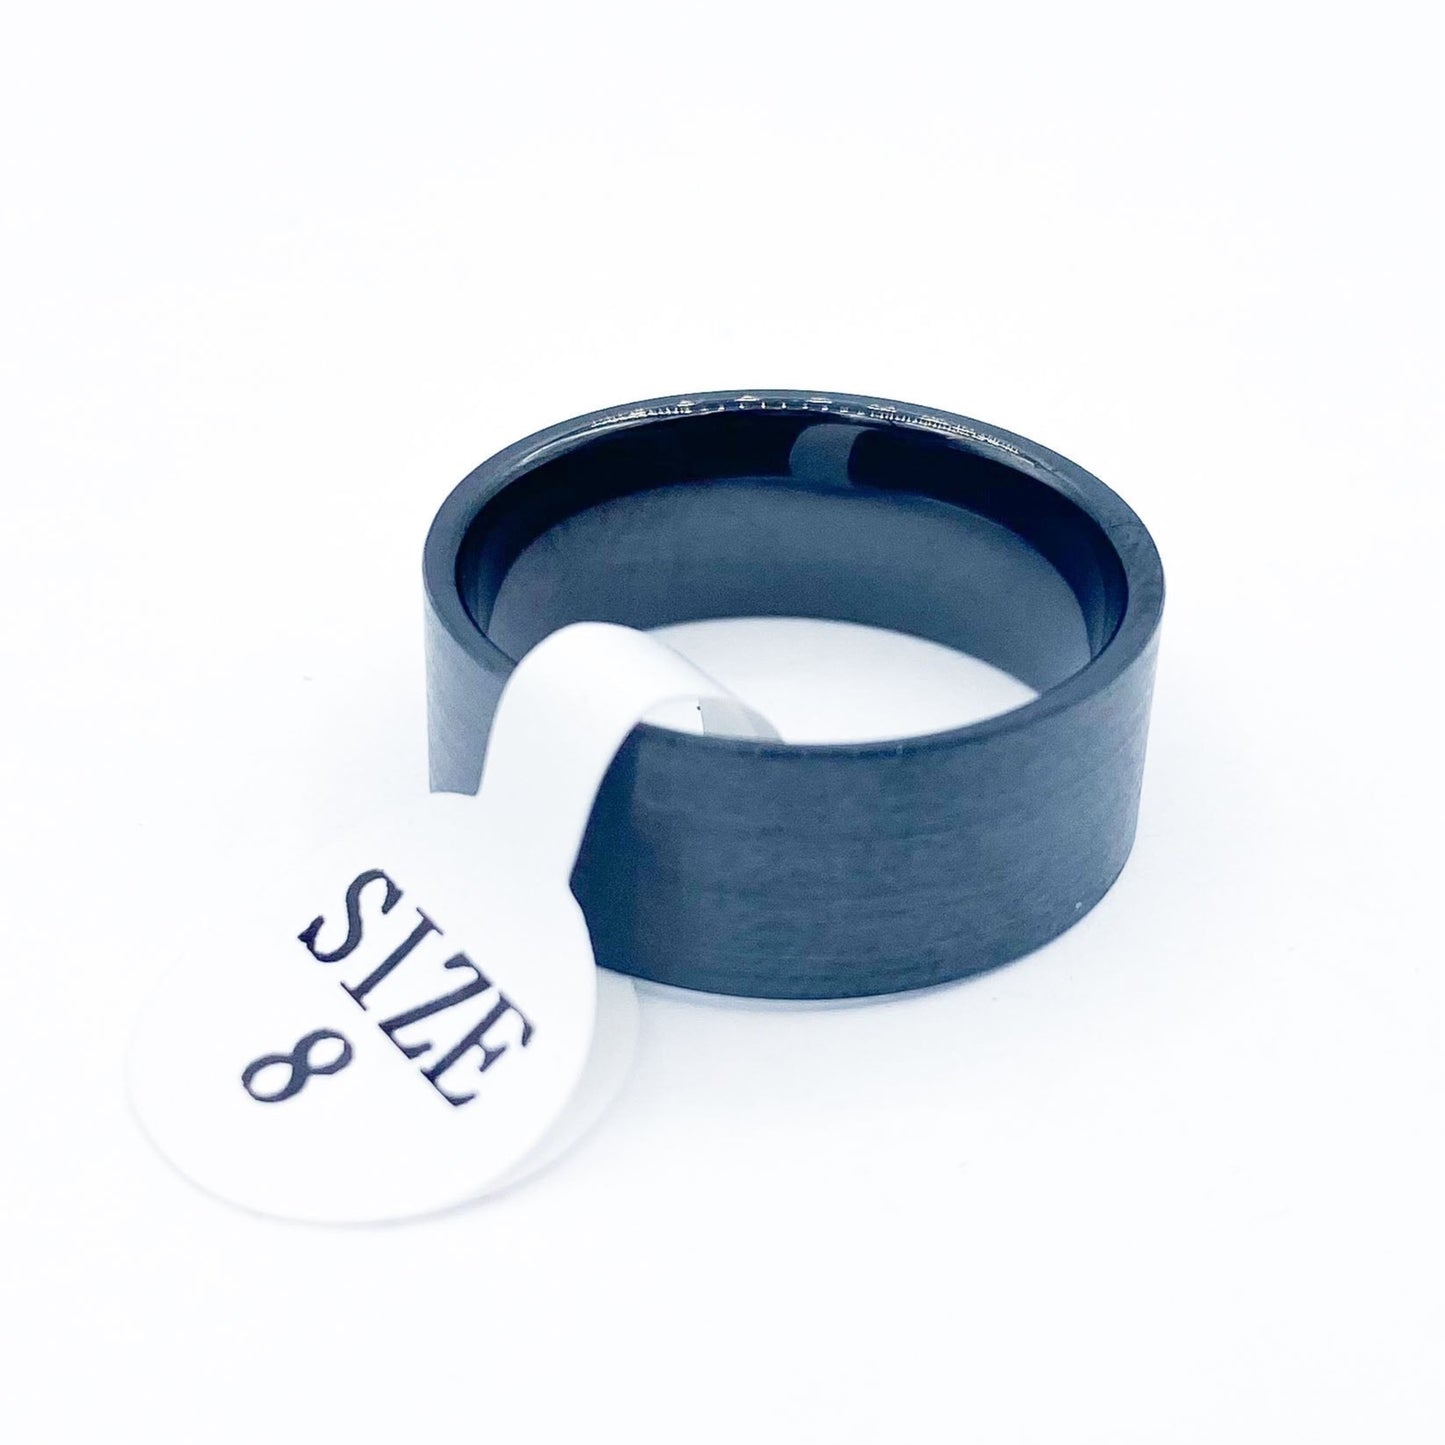 Black Ceramic Ring Liner - Patrick Adair Supplies